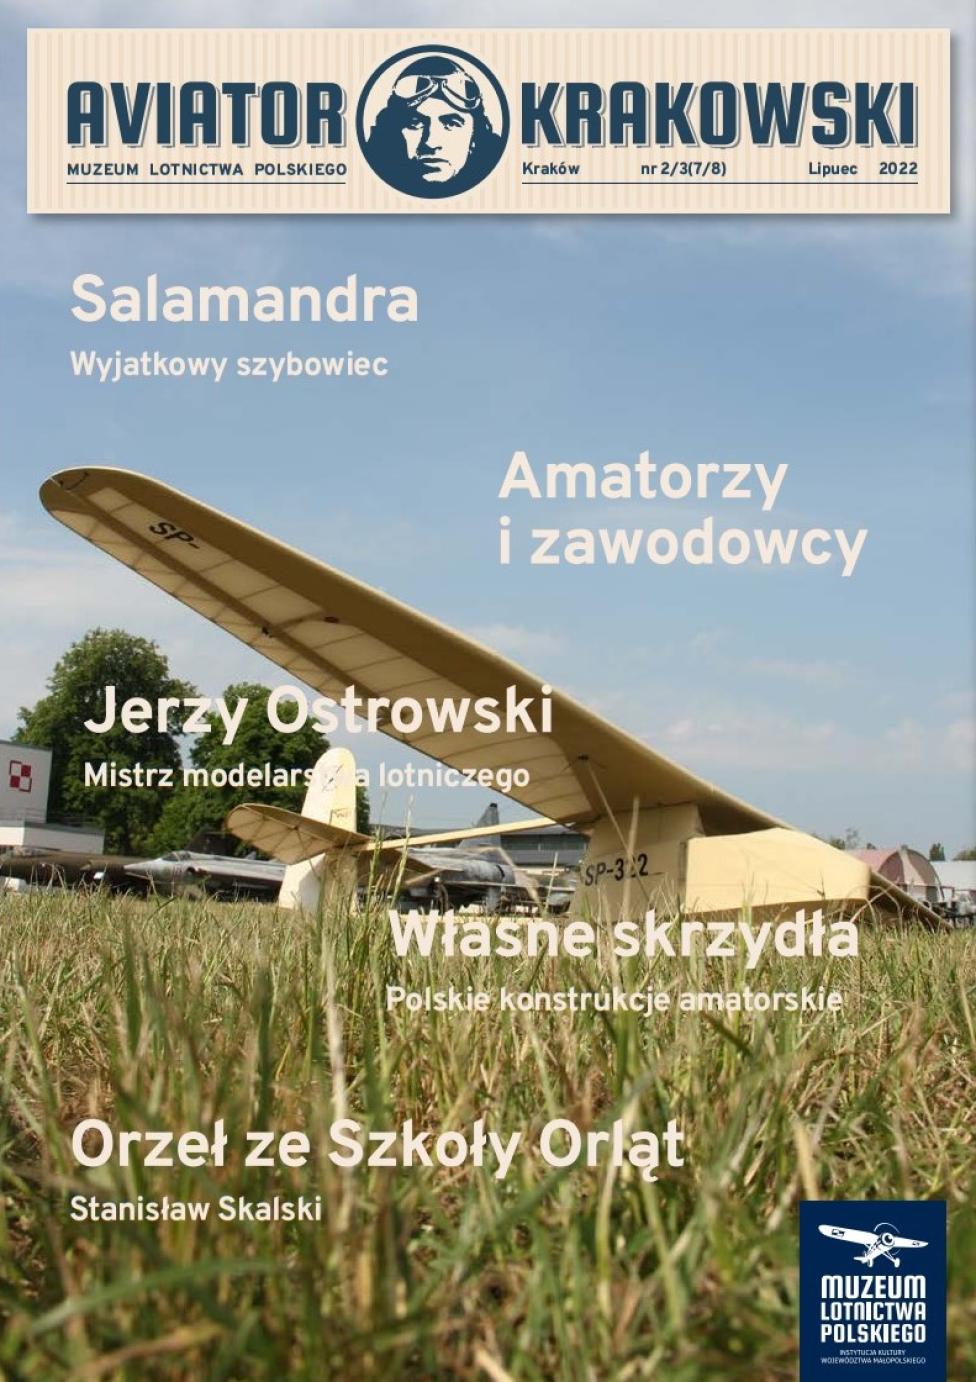 Aviator Krakowski Nr 23(78) lipiec 2022